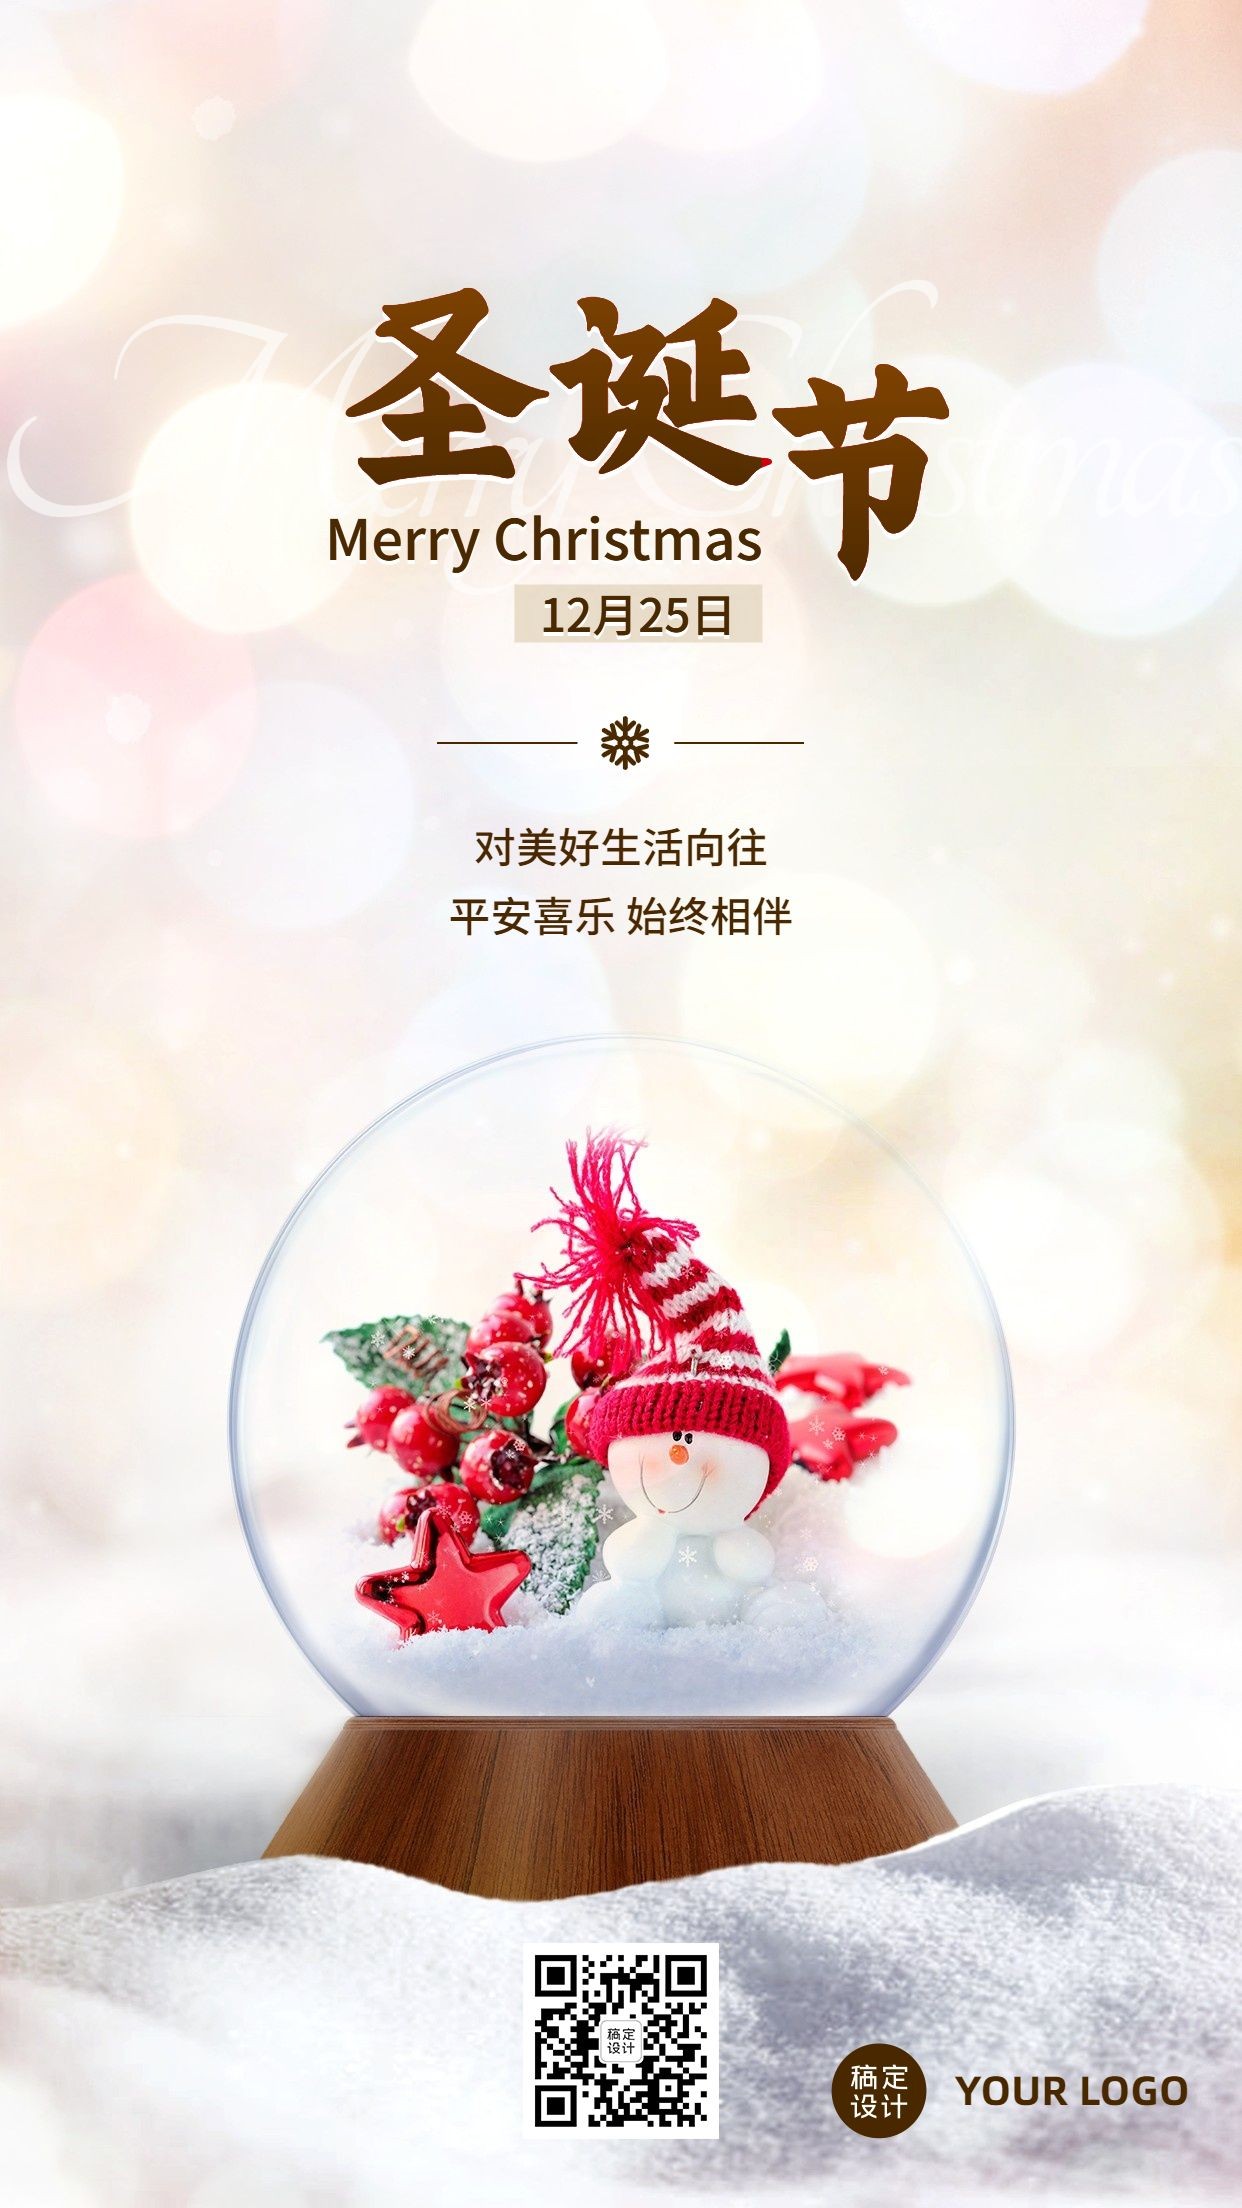 圣诞节祝福水晶灯实景手机海报